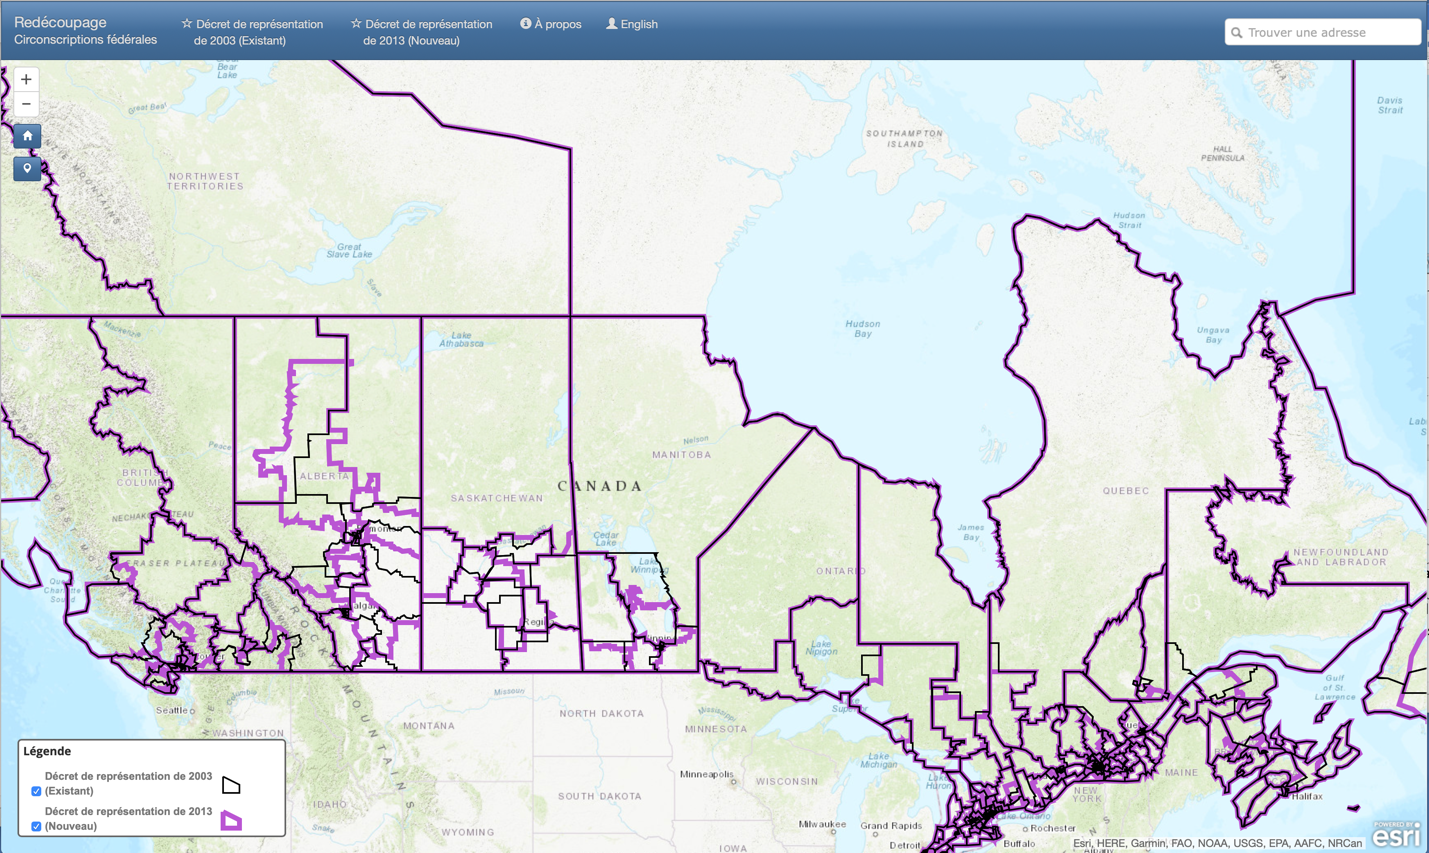 Carte du Canada avec des lignes mauve montrant les limites des circonscriptions électorales de 2003 et 2013